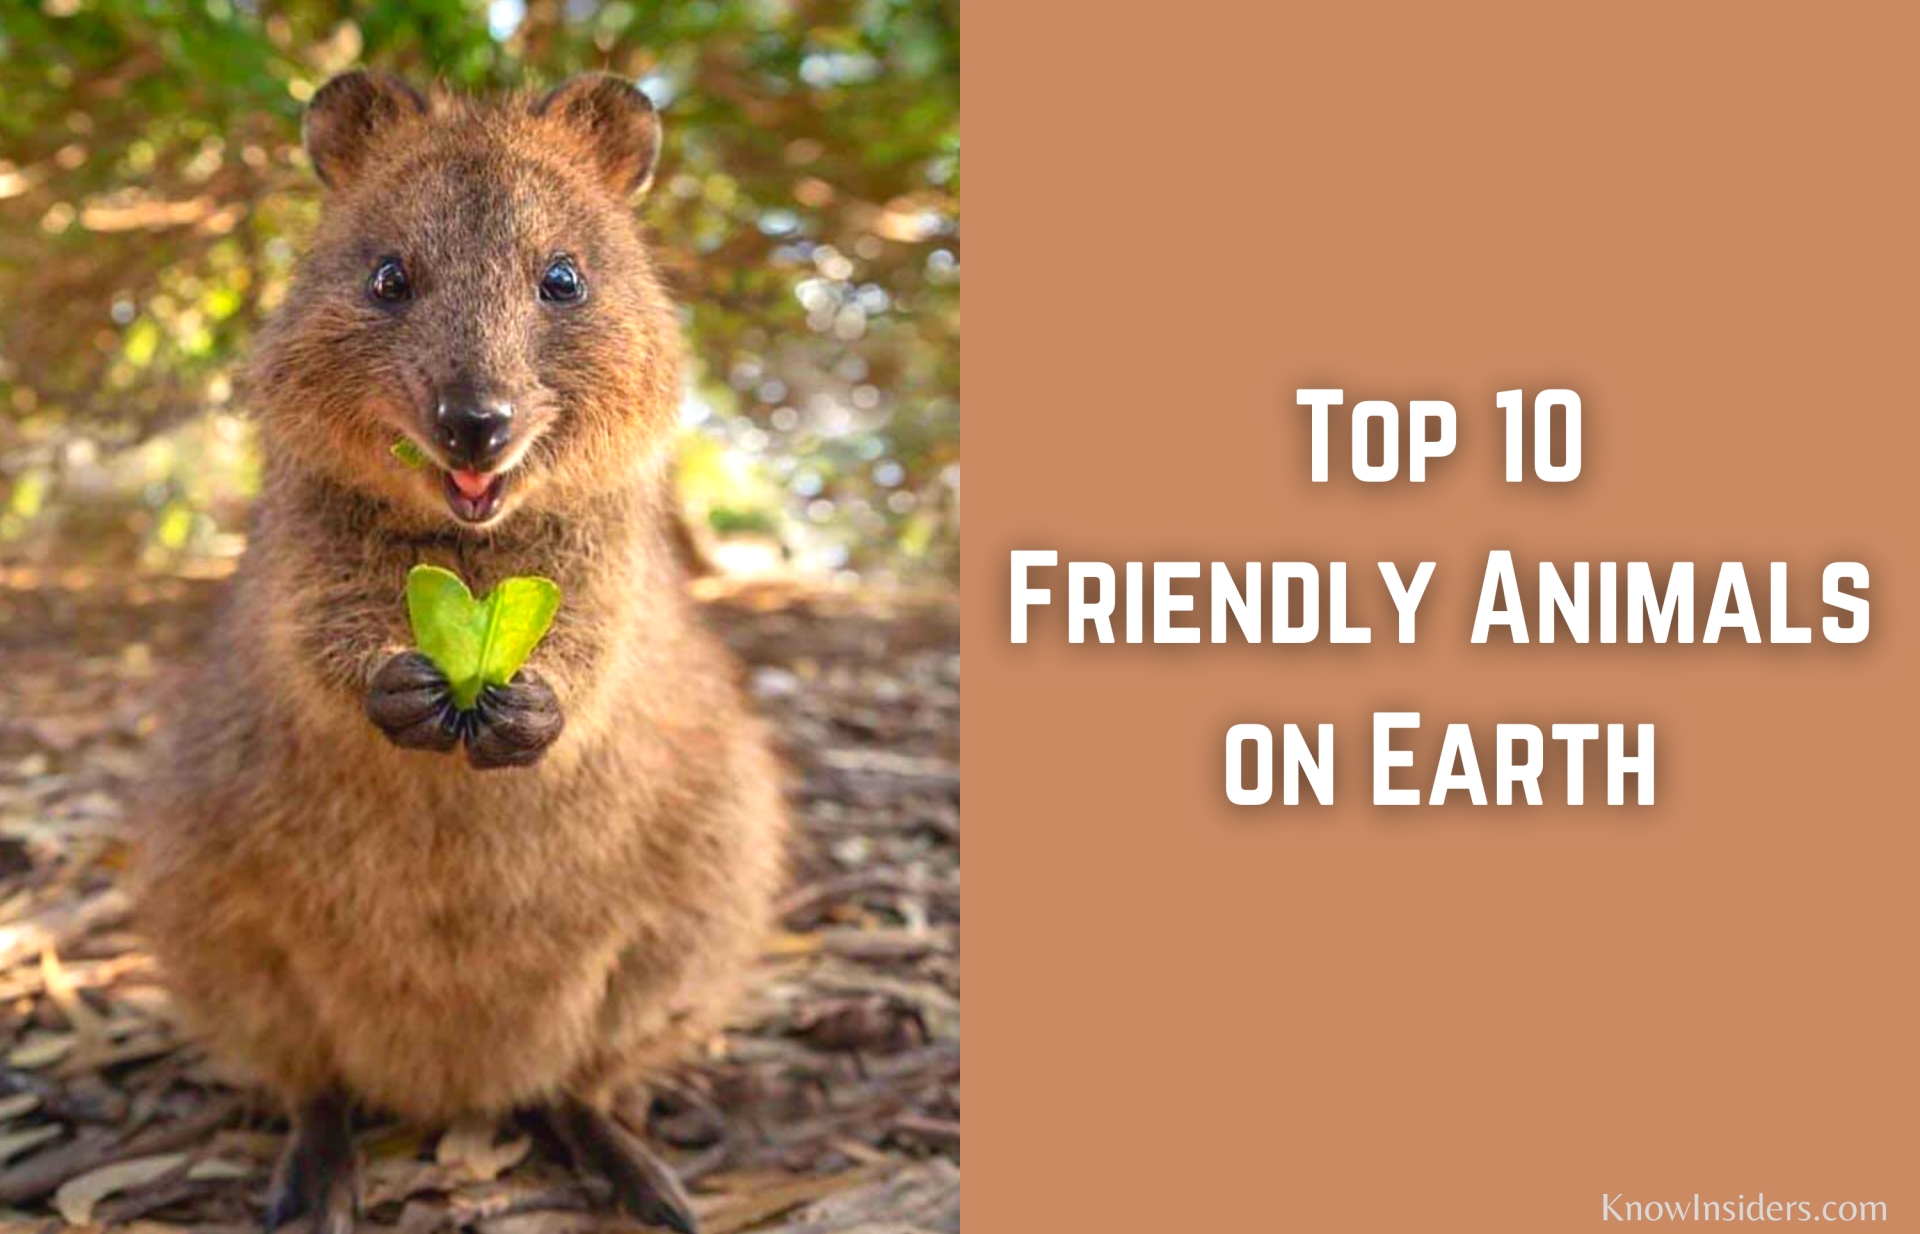 Top 10 Friendliest Animals in the World